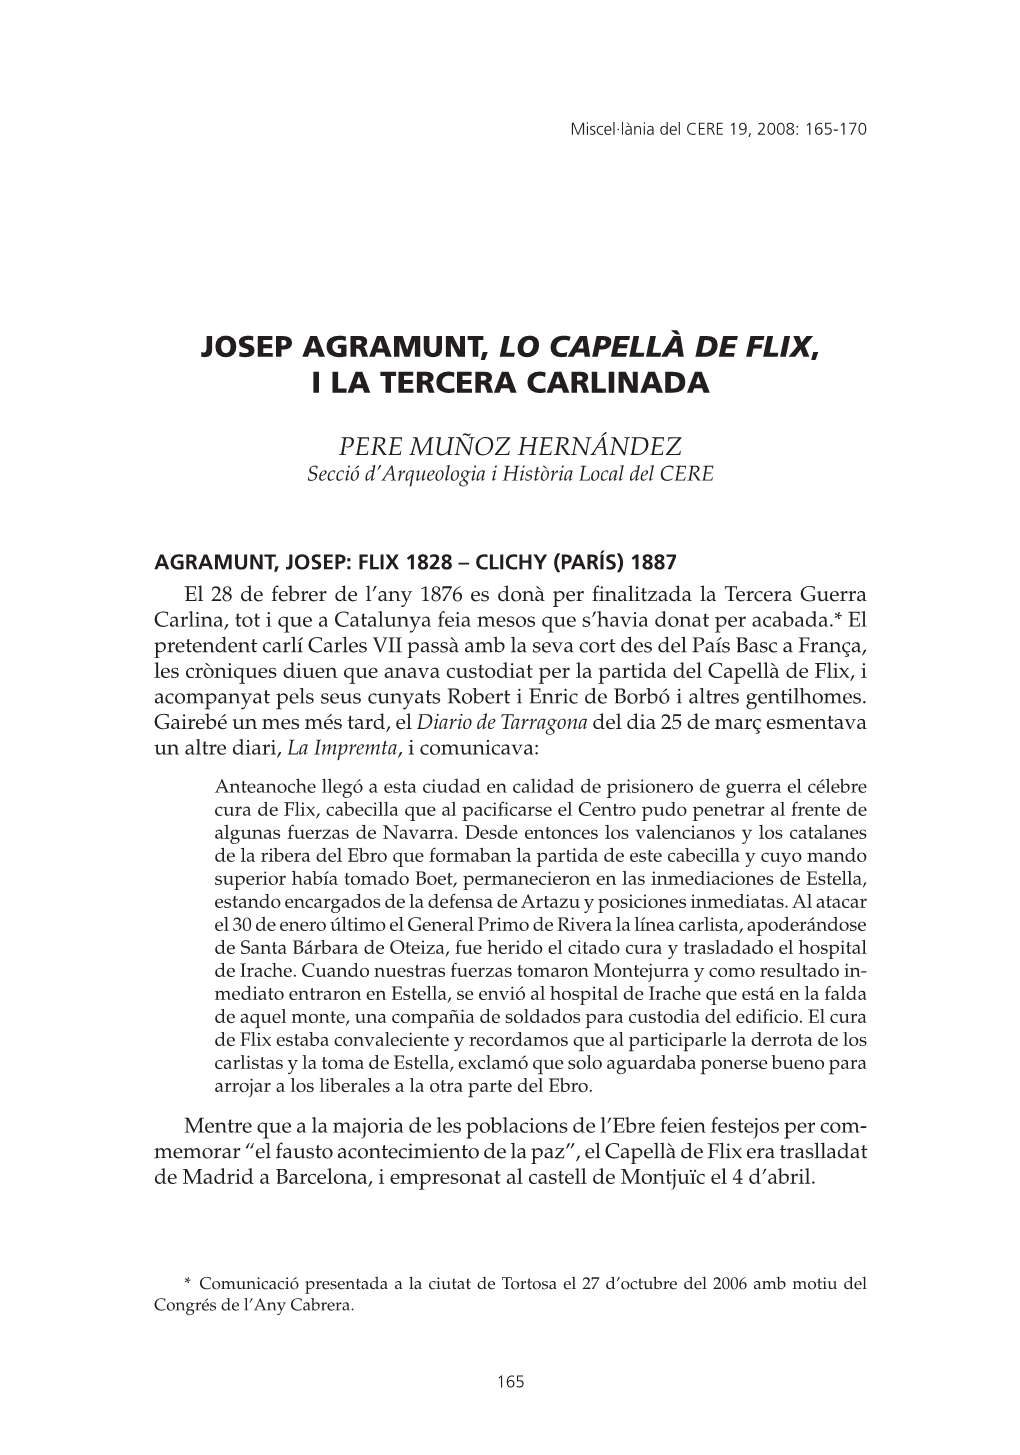 Josep Agramunt, Lo Capellà De Flix, I La Tercera Carlinada